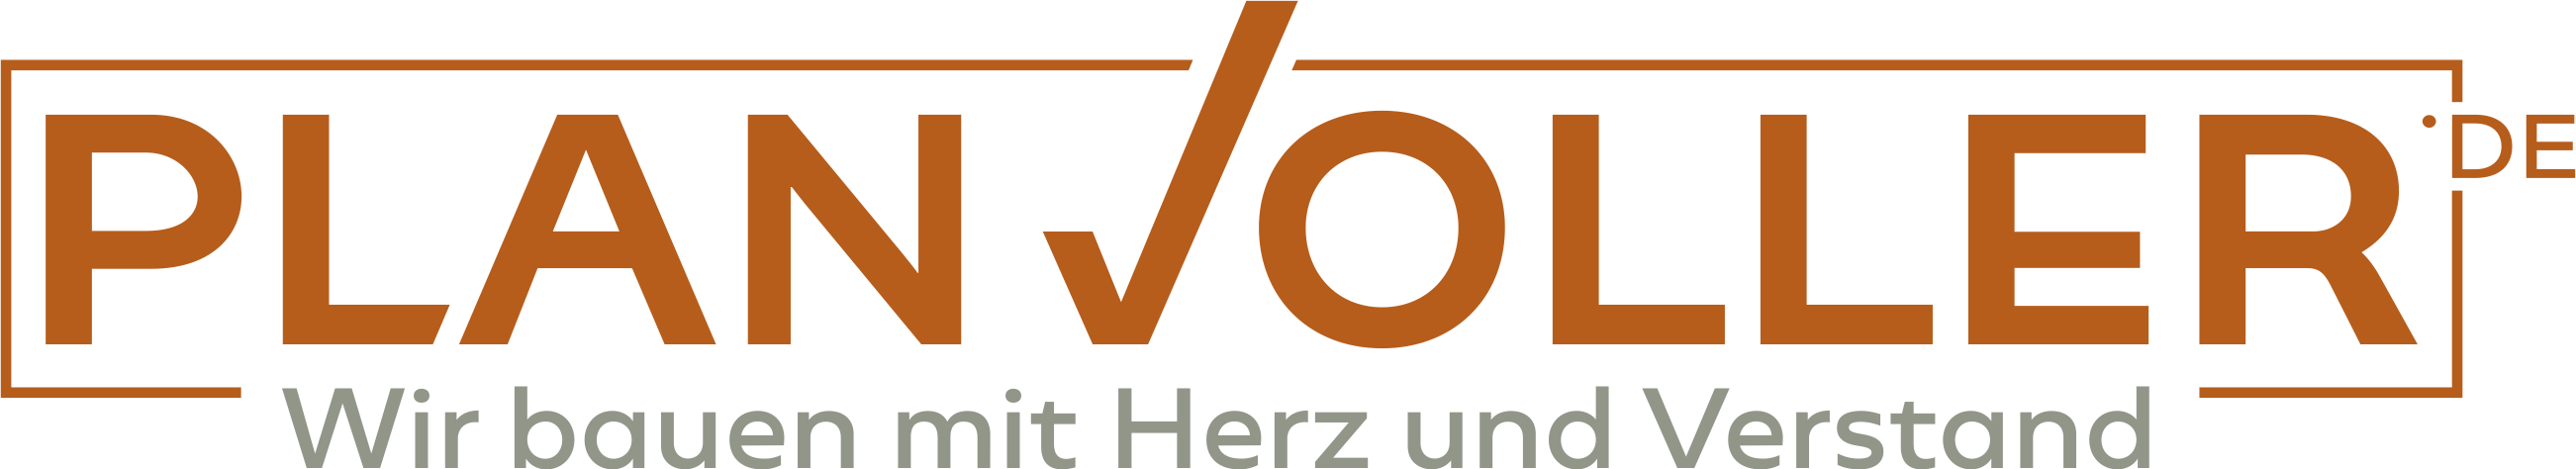 Logo Planvoller